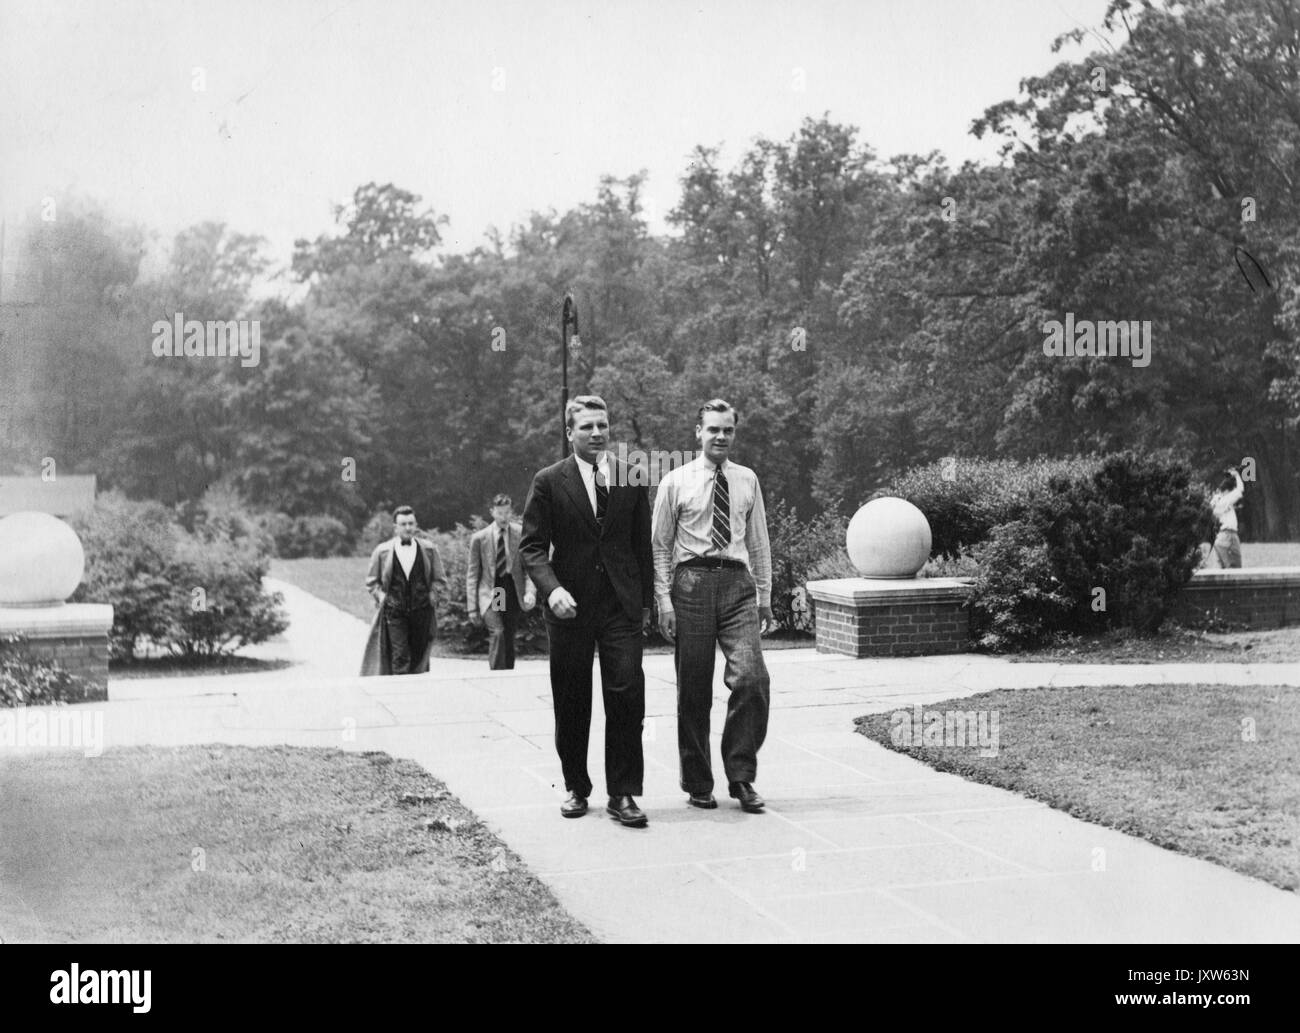 La vie étudiante, Forrest hood Adams, George newton, francs photographie, la marche à l'extérieur, 1938. Banque D'Images